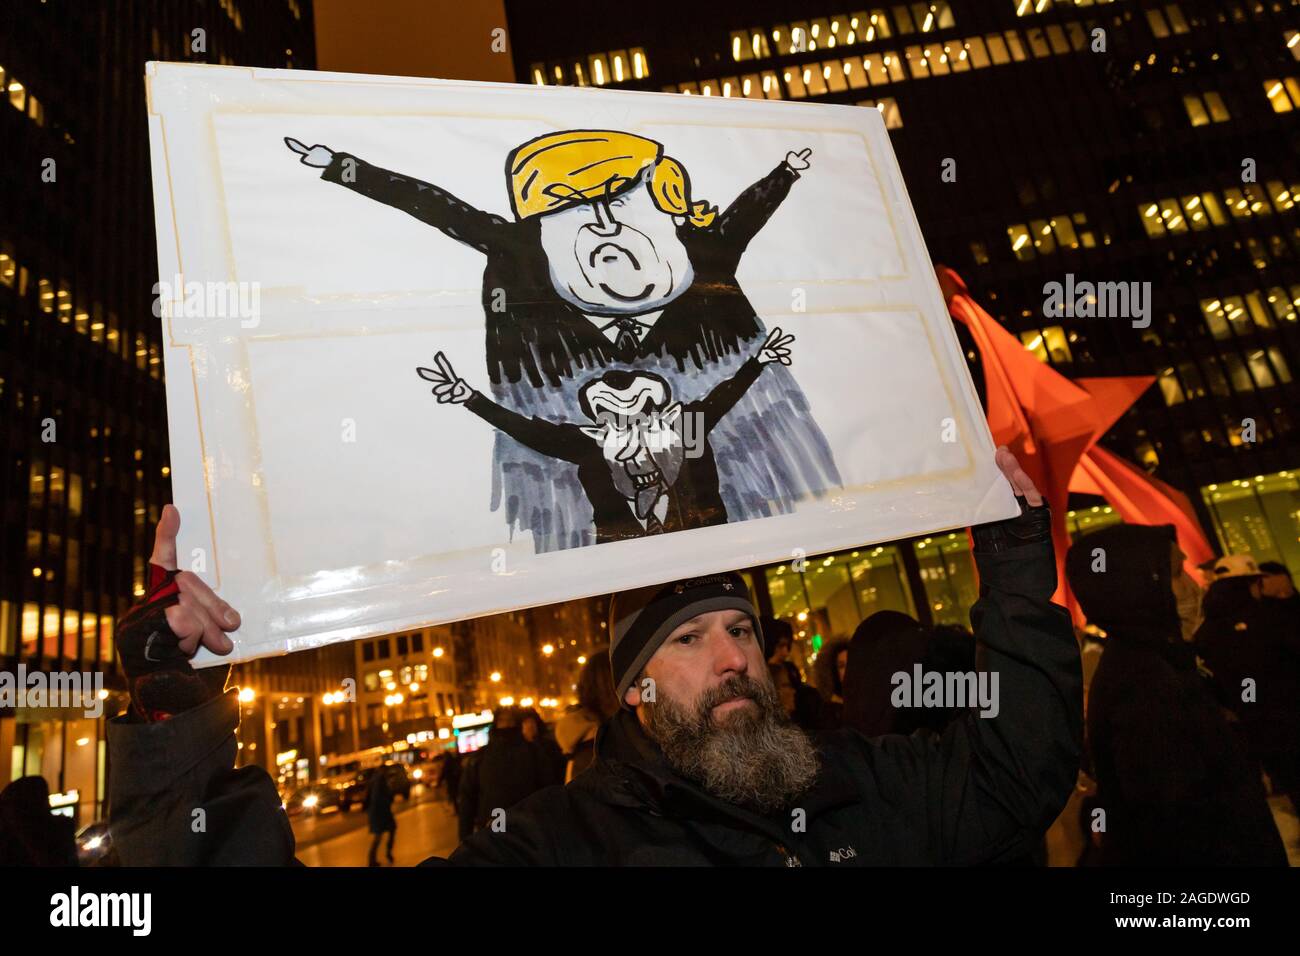 Chicago meeting de protestation à l'appui de l'impeachment du président Donald Trump, qui a eu lieu dans les Plaza sur une journée froide, le jour avant le vote de destitution doit avoir lieu. Banque D'Images